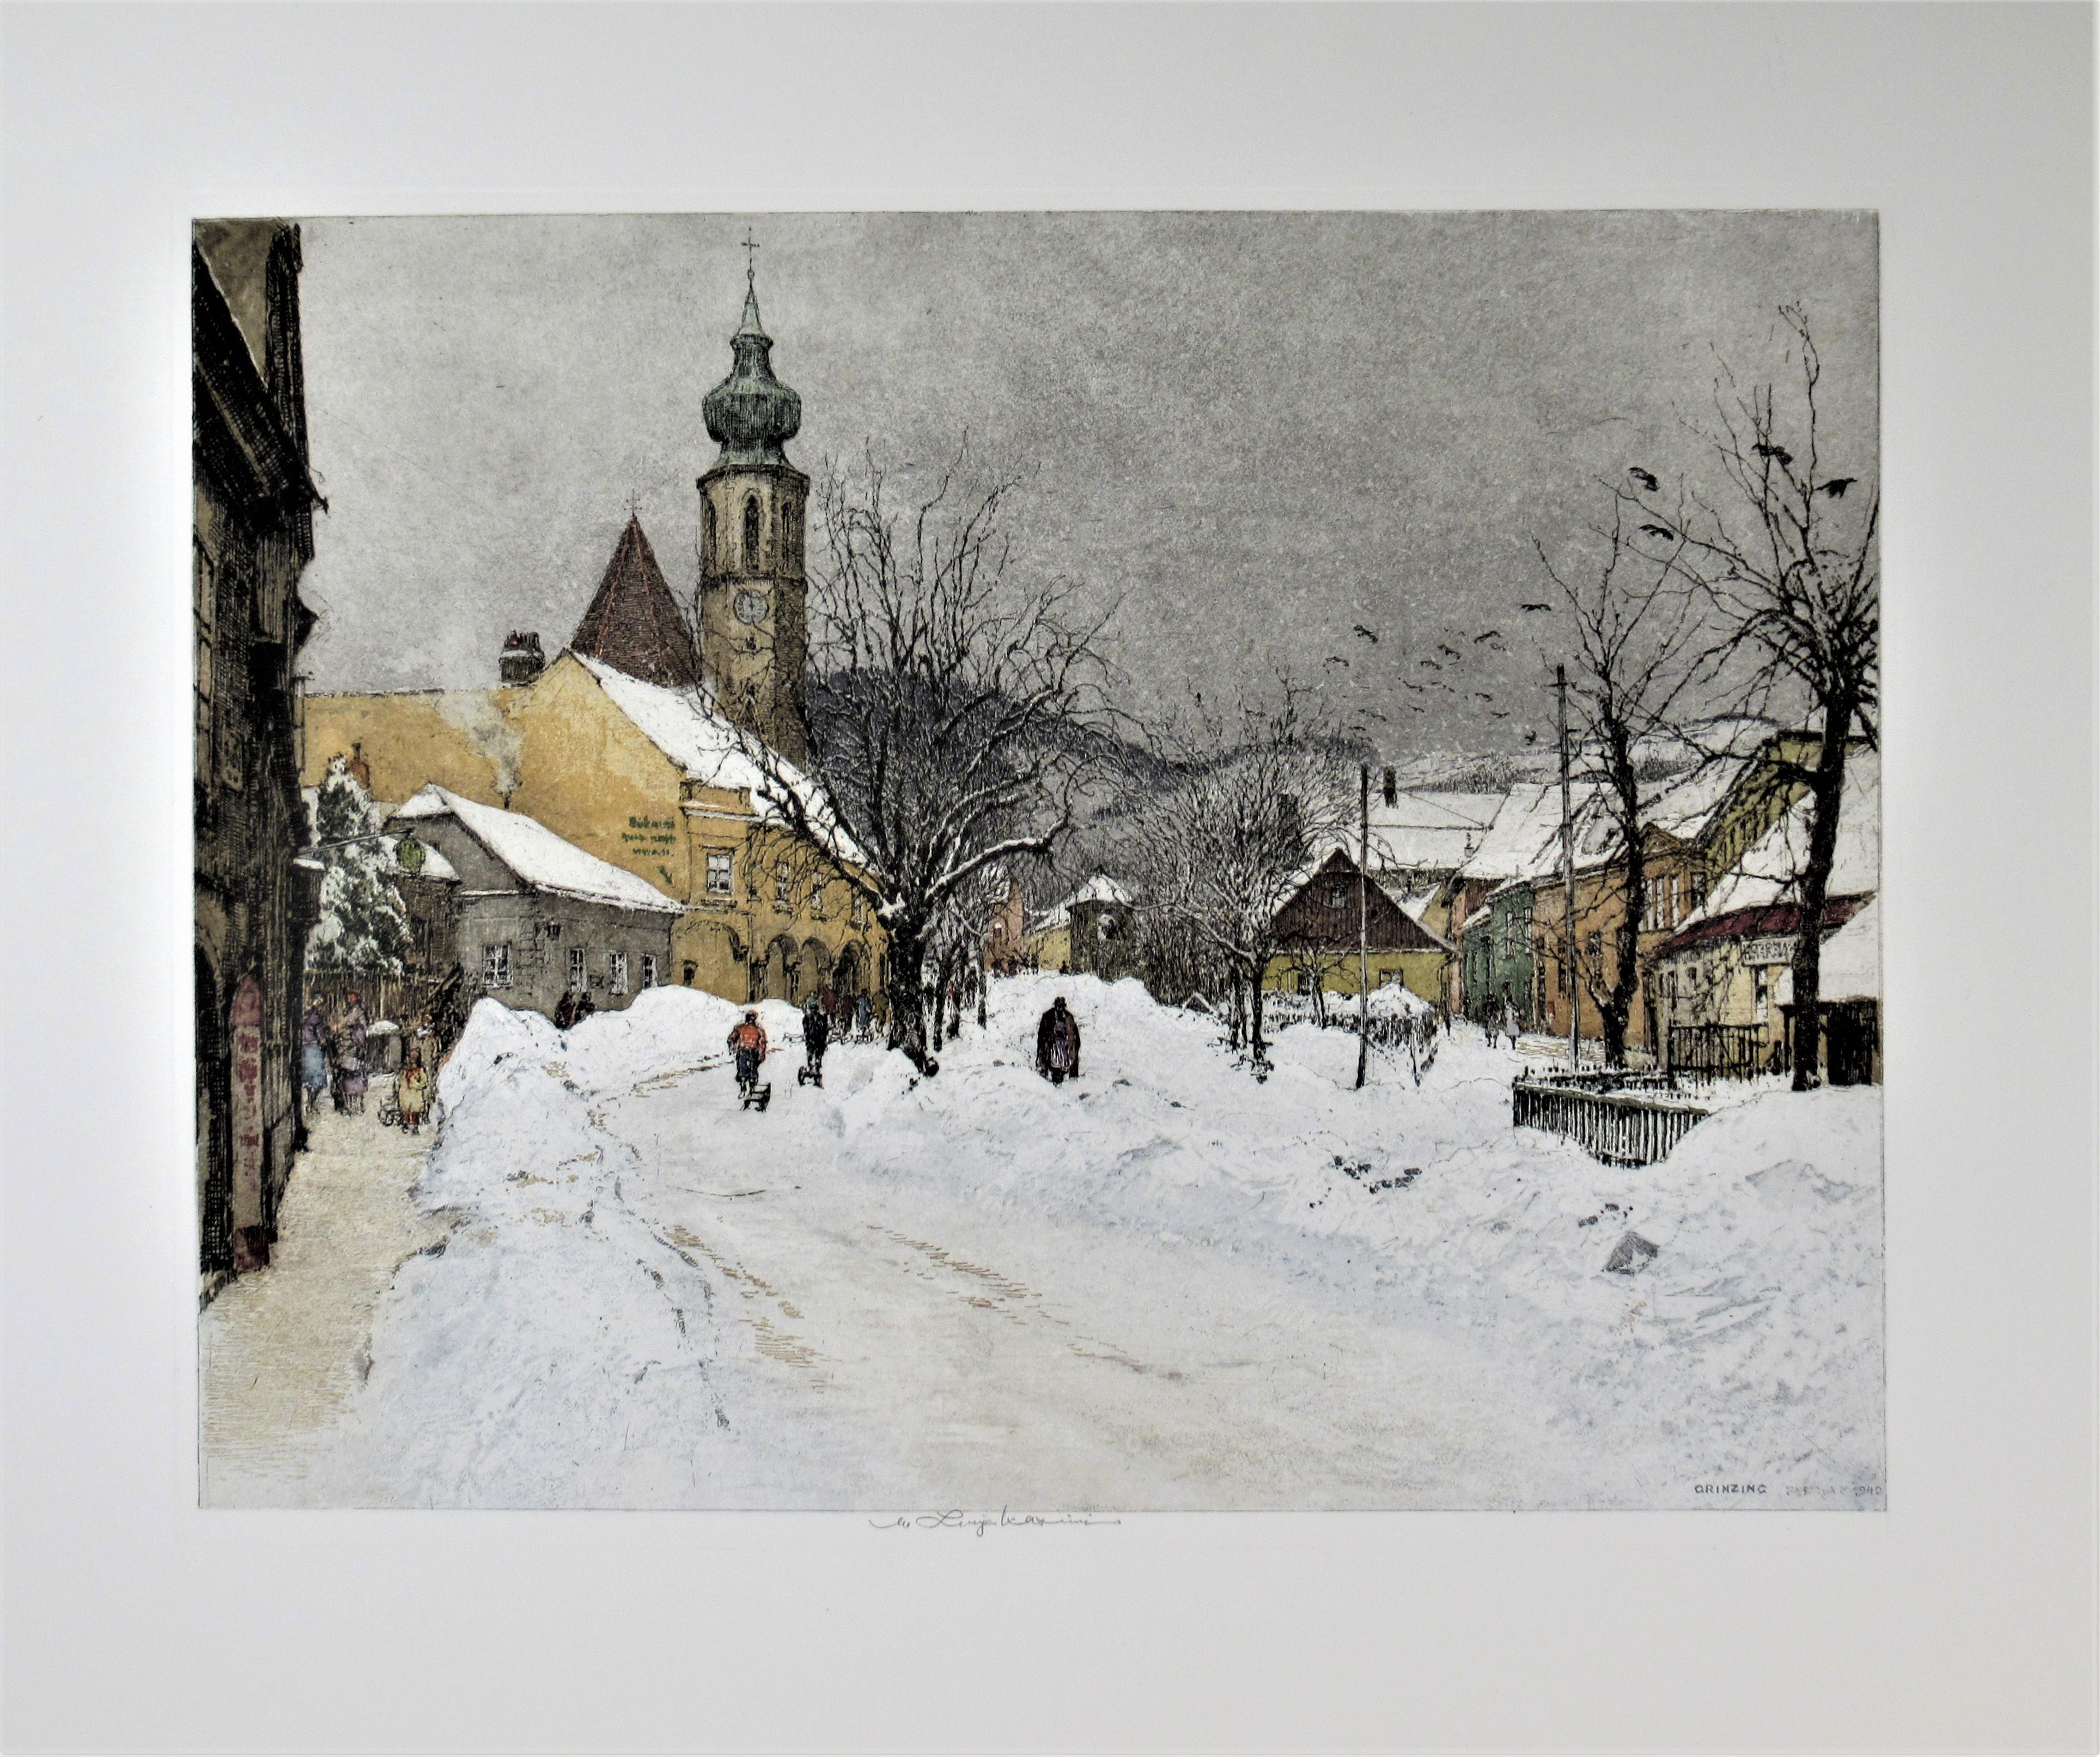 Luigi Kasimir Landscape Print - Grinzing Snow Scene, Austria, large color etching